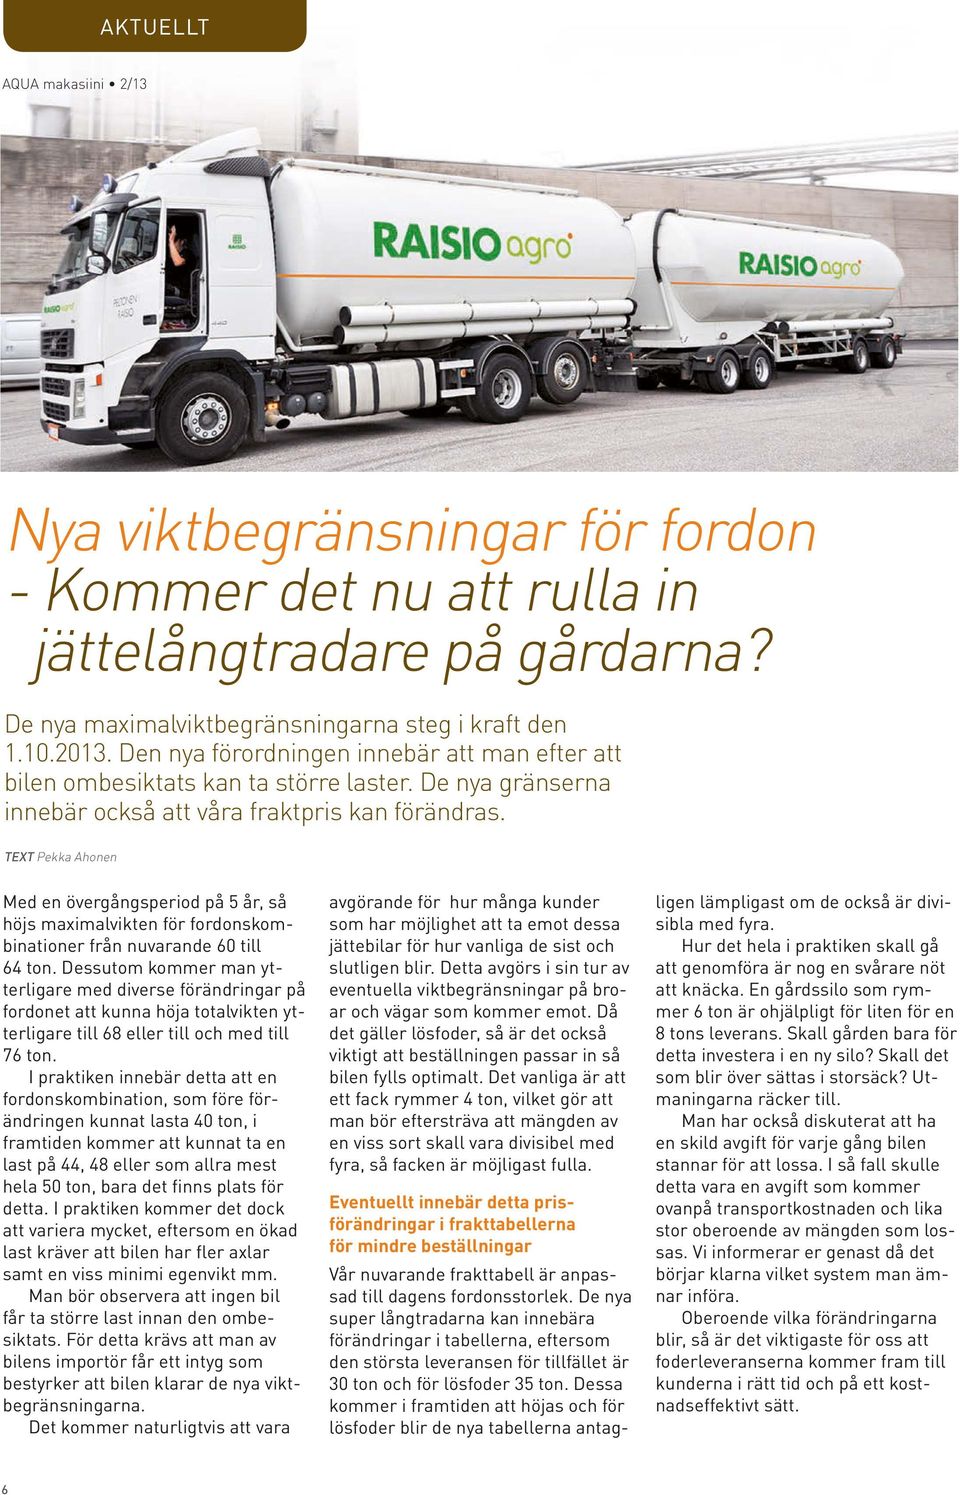 TEXT Pekka Ahonen Med en övergångsperiod på 5 år, så höjs maximalvikten för fordonskombinationer från nuvarande 60 till 64 ton.